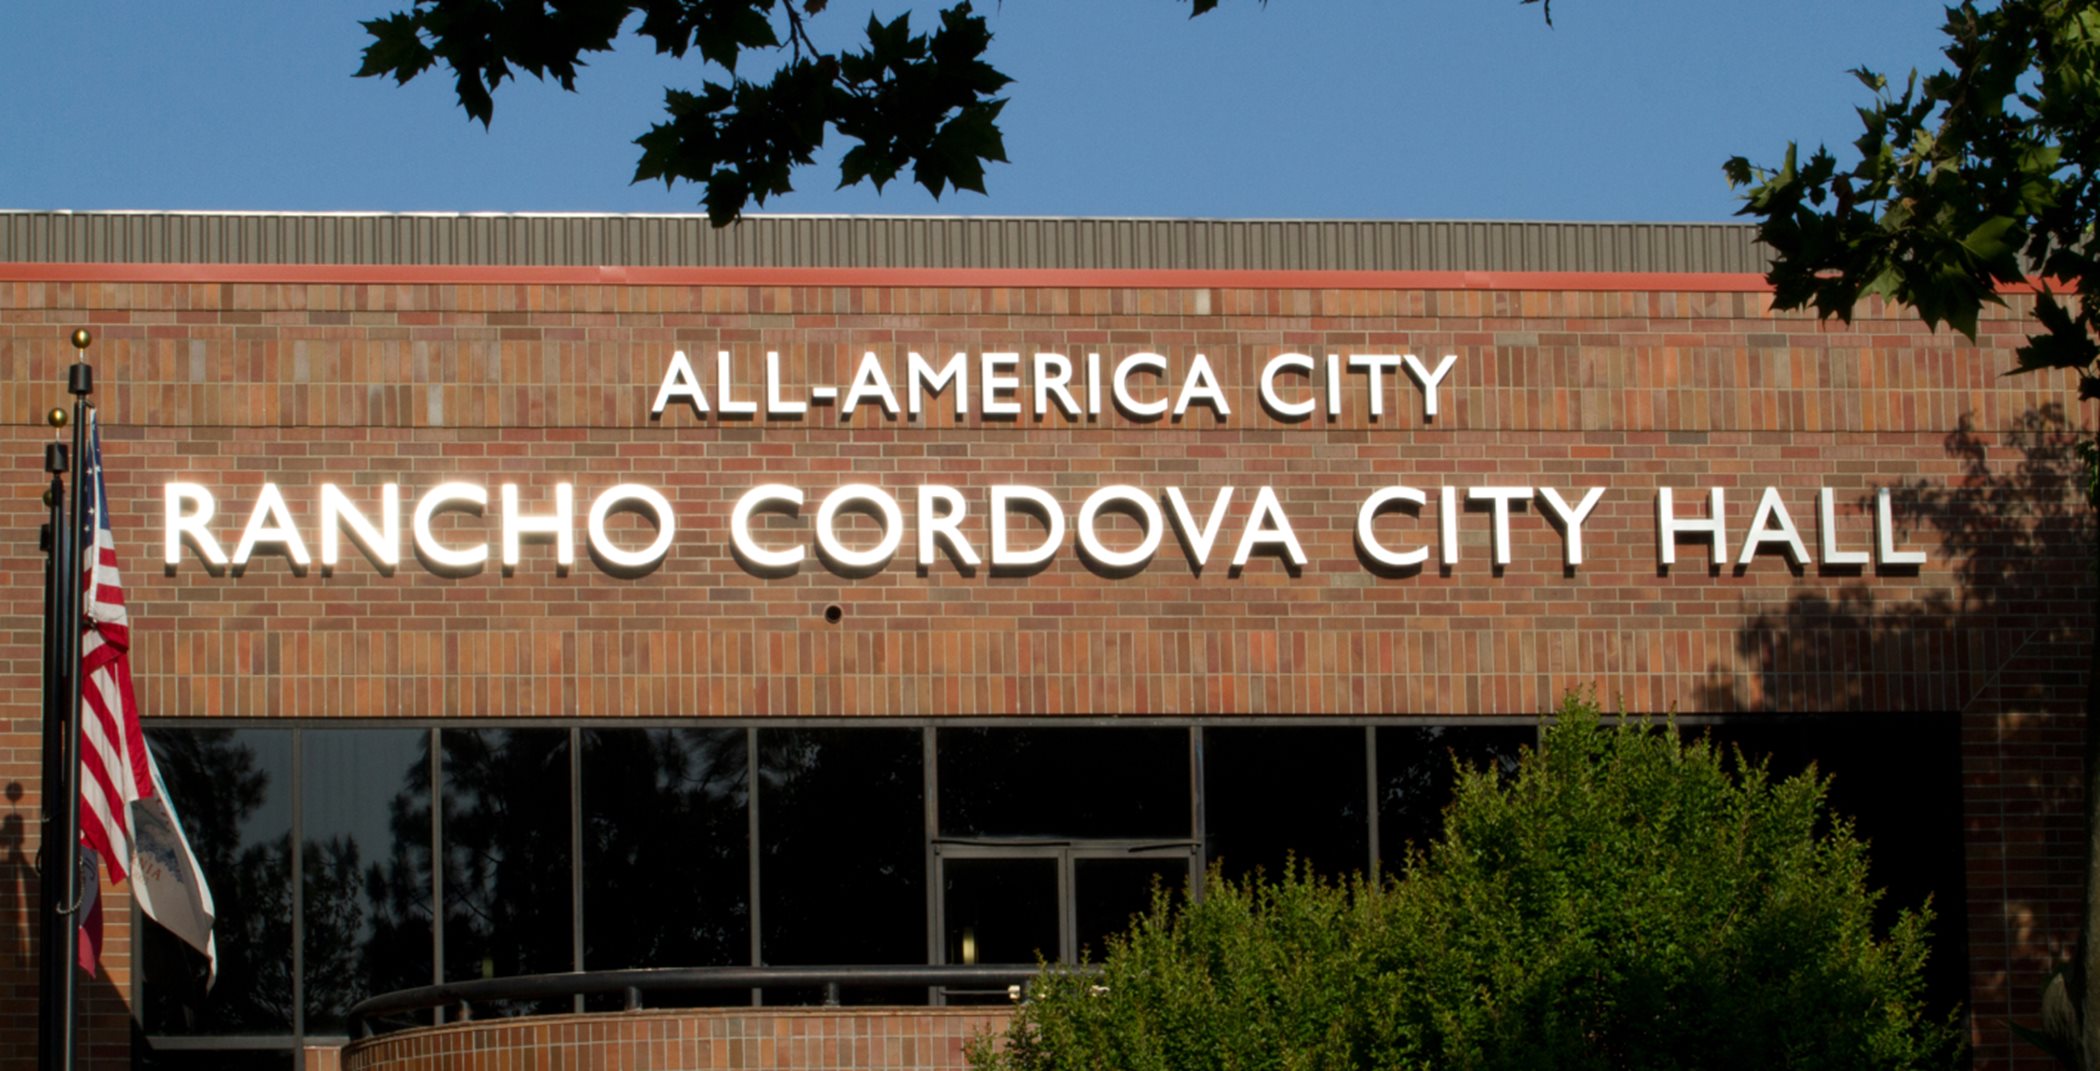 Rancho Cordova City Hall